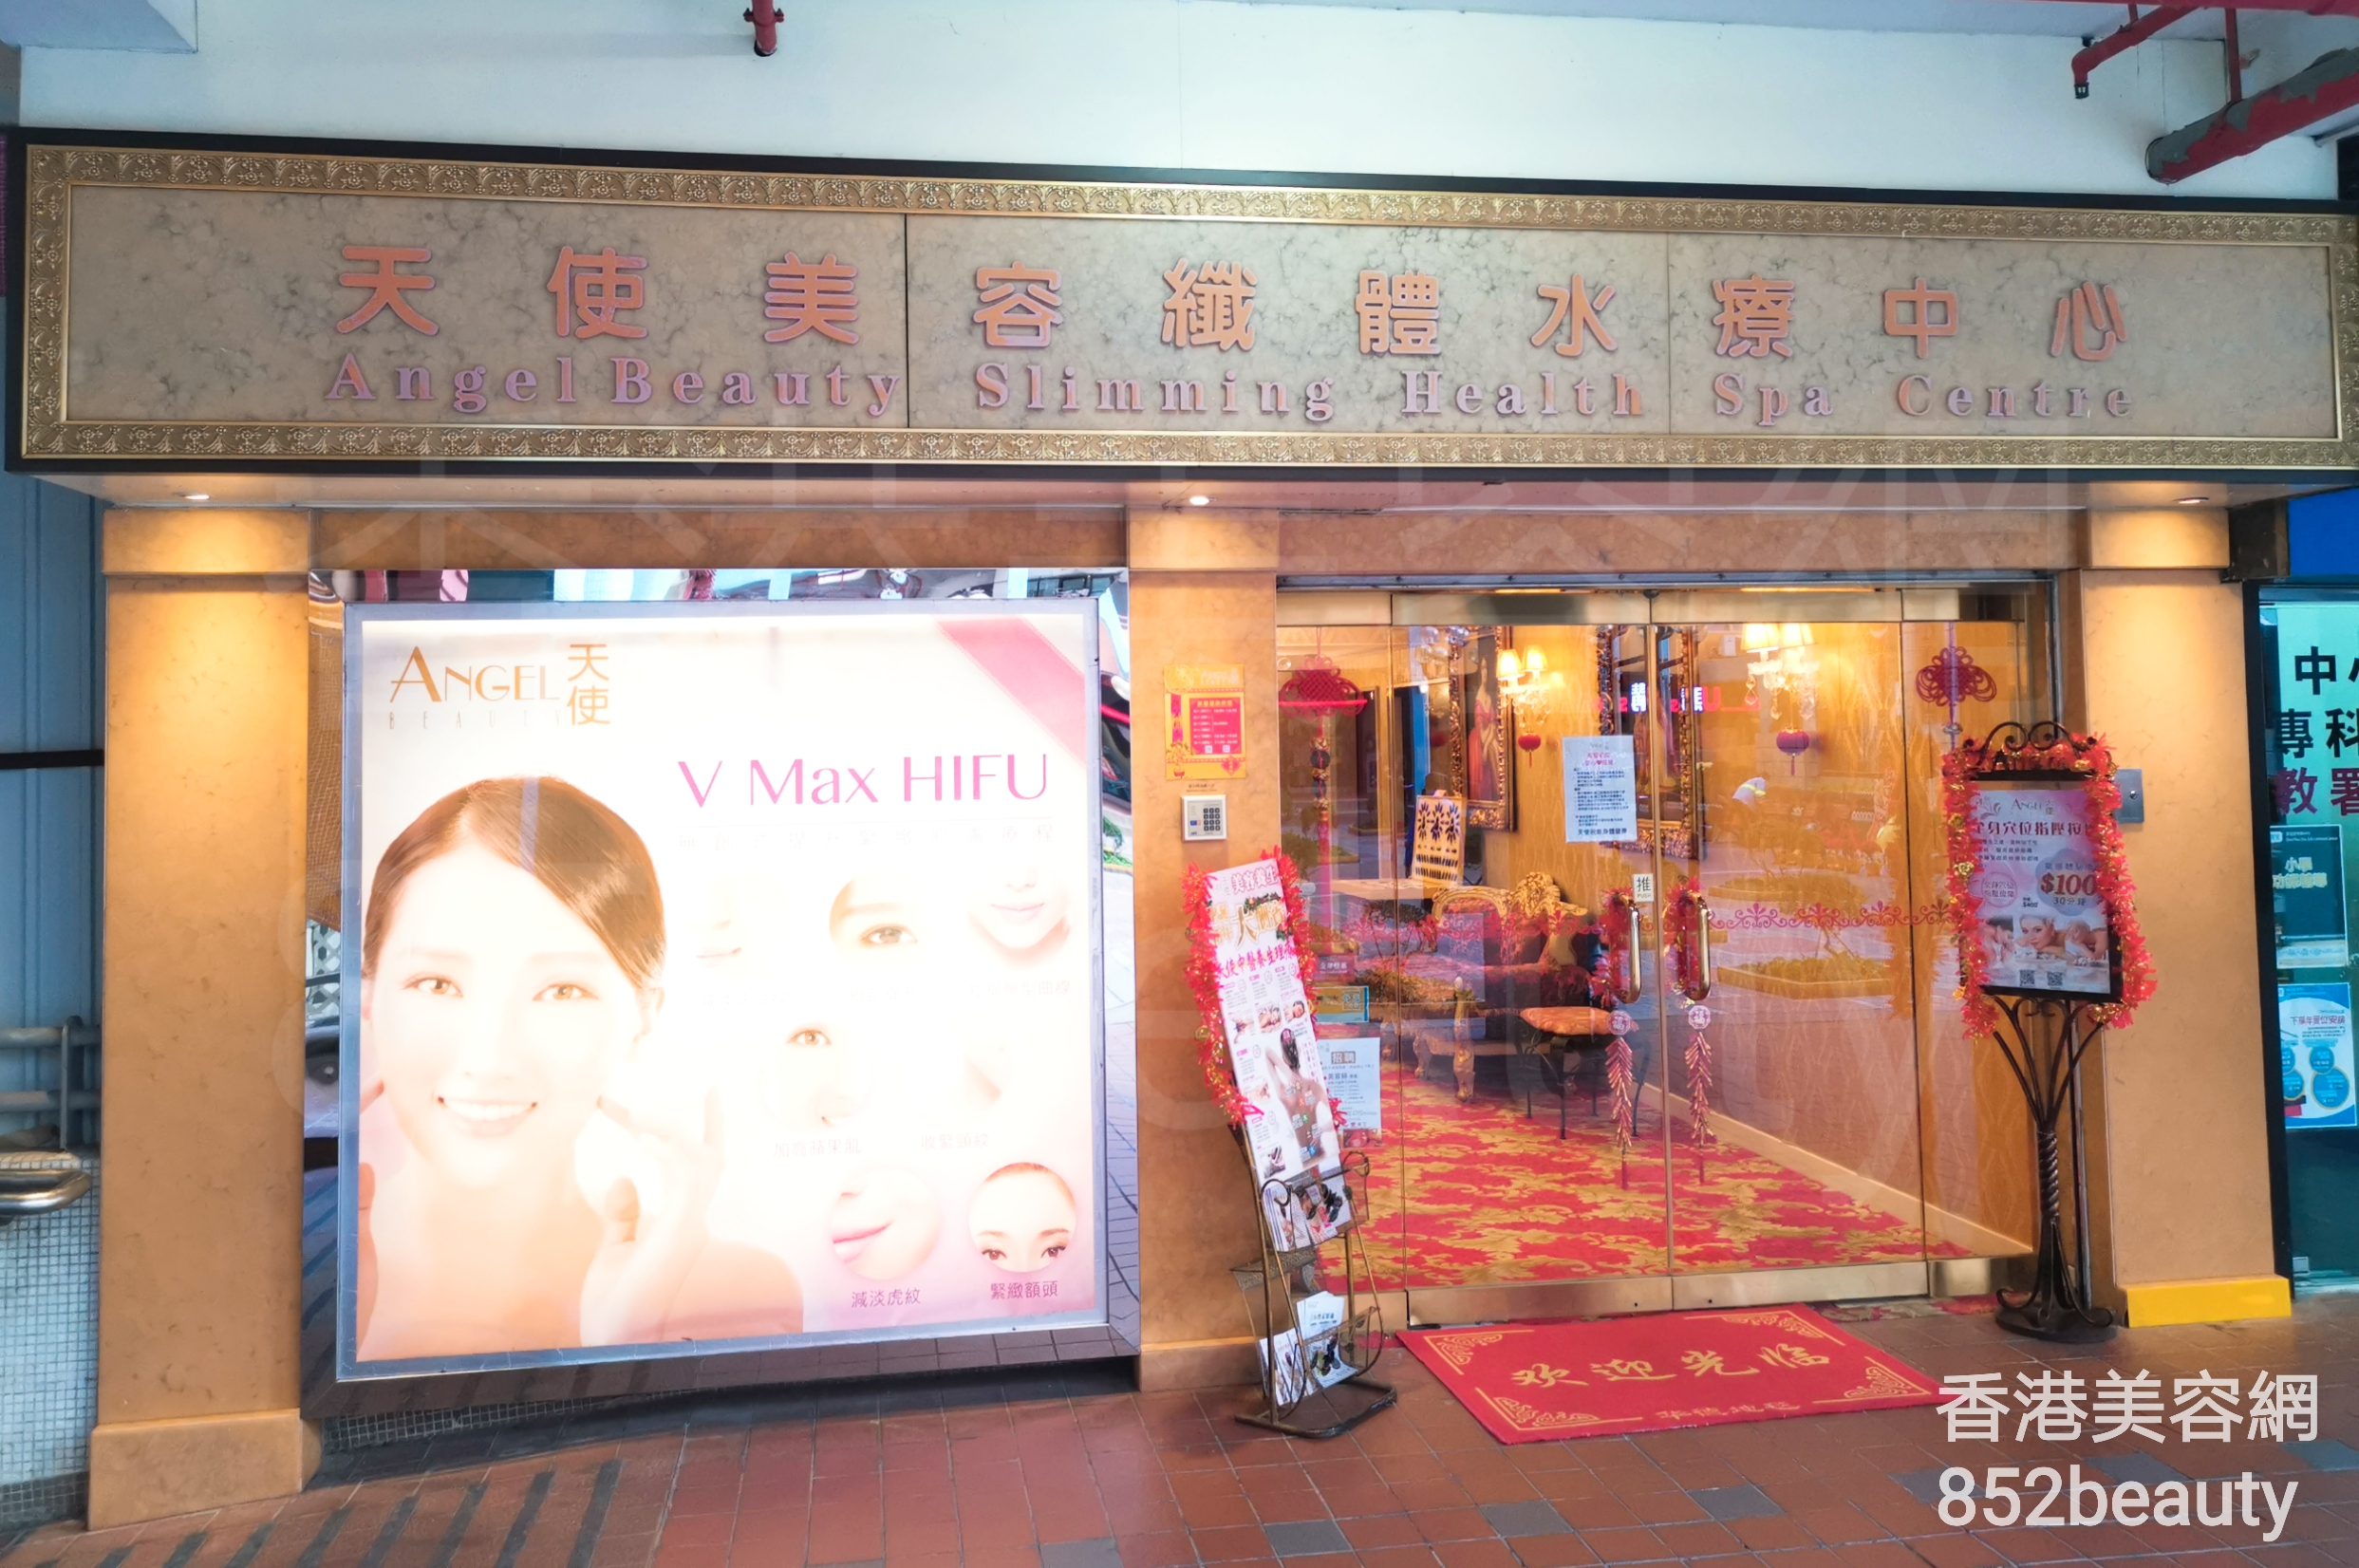 美容院 Beauty Salon 集团Angel Beauty Slimming 天使美容纖體水療中心 (牛頭角) @ 香港美容网 HK Beauty Salon